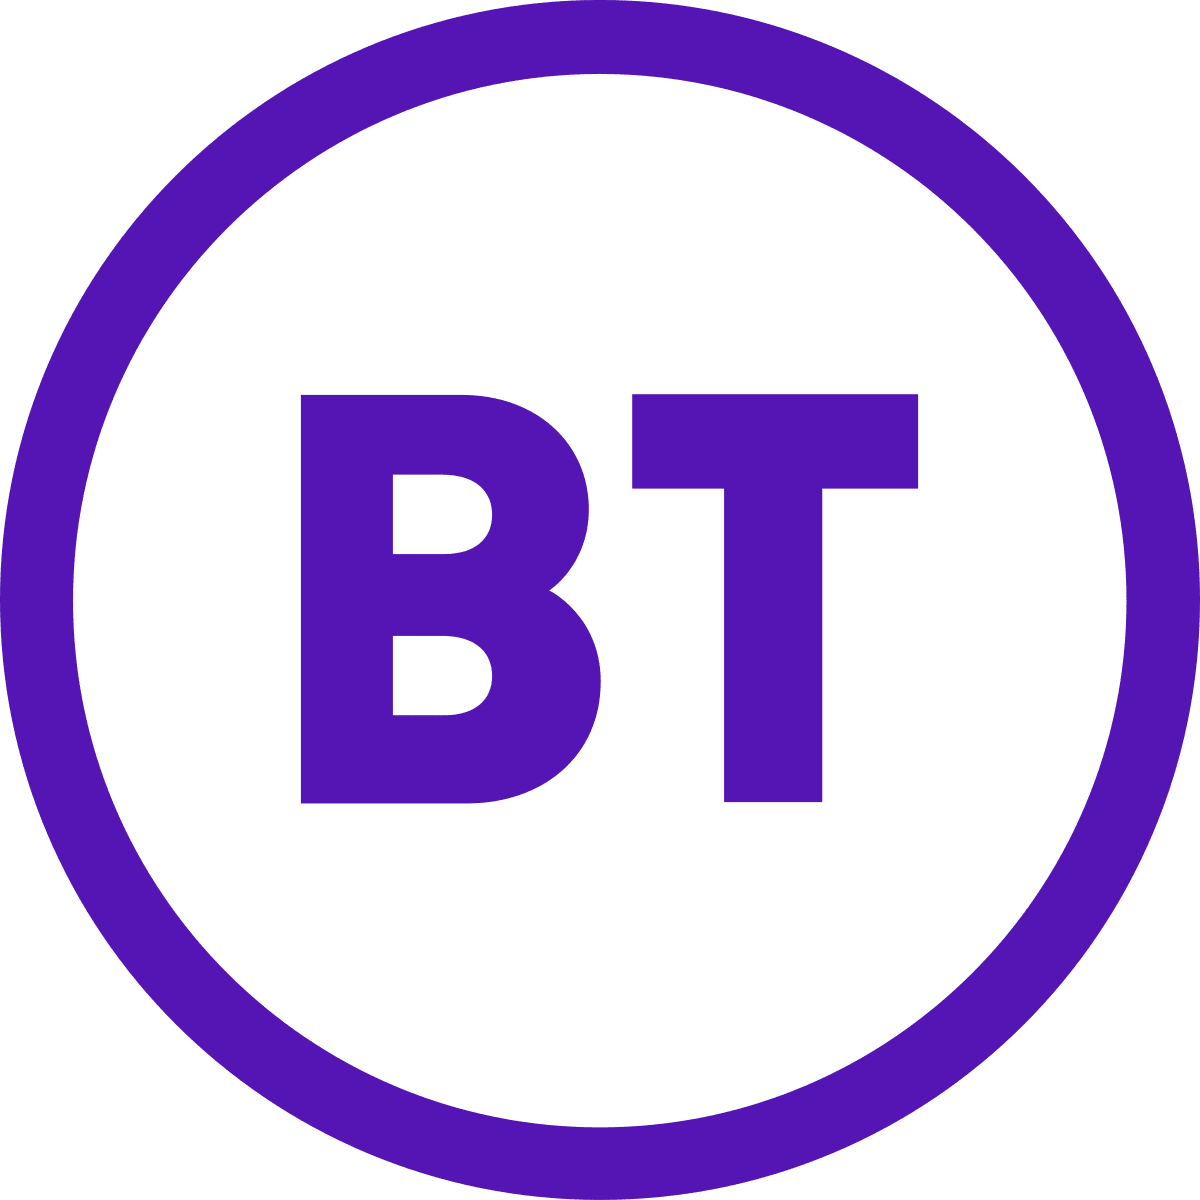 Logotipo BT 2019.svg